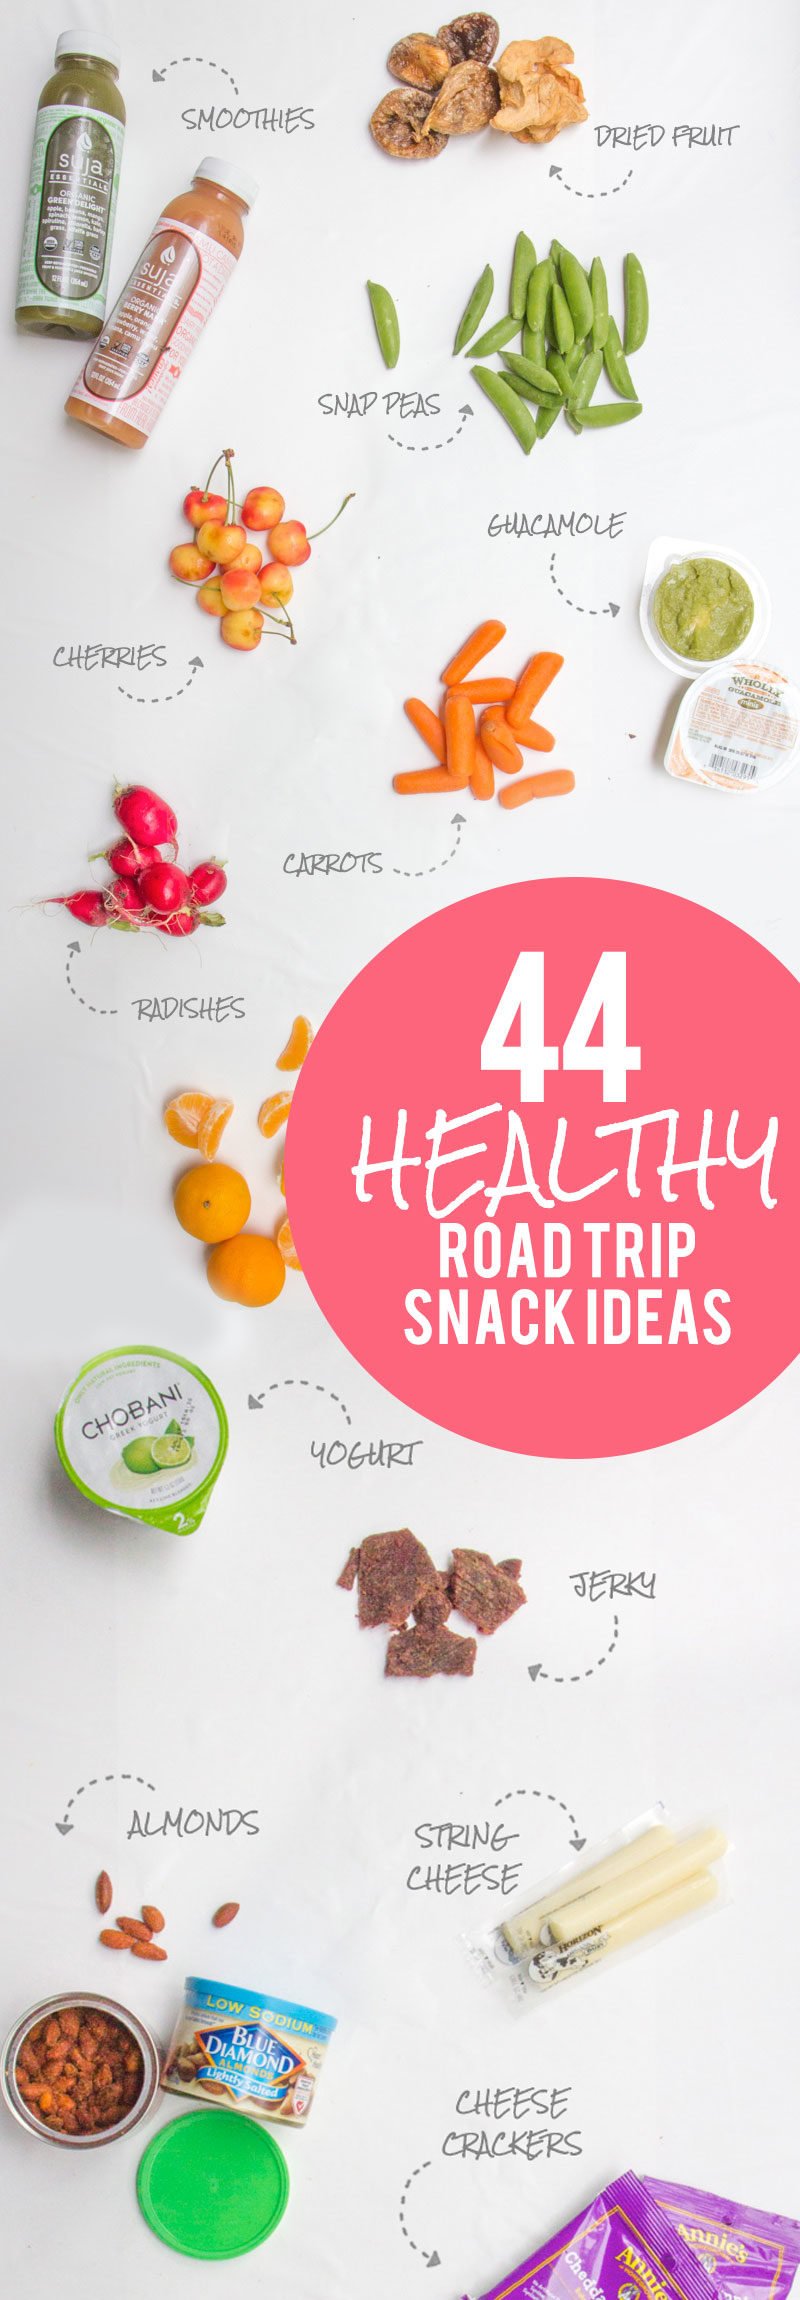 44 Healthy Road Trip Snack Ideas